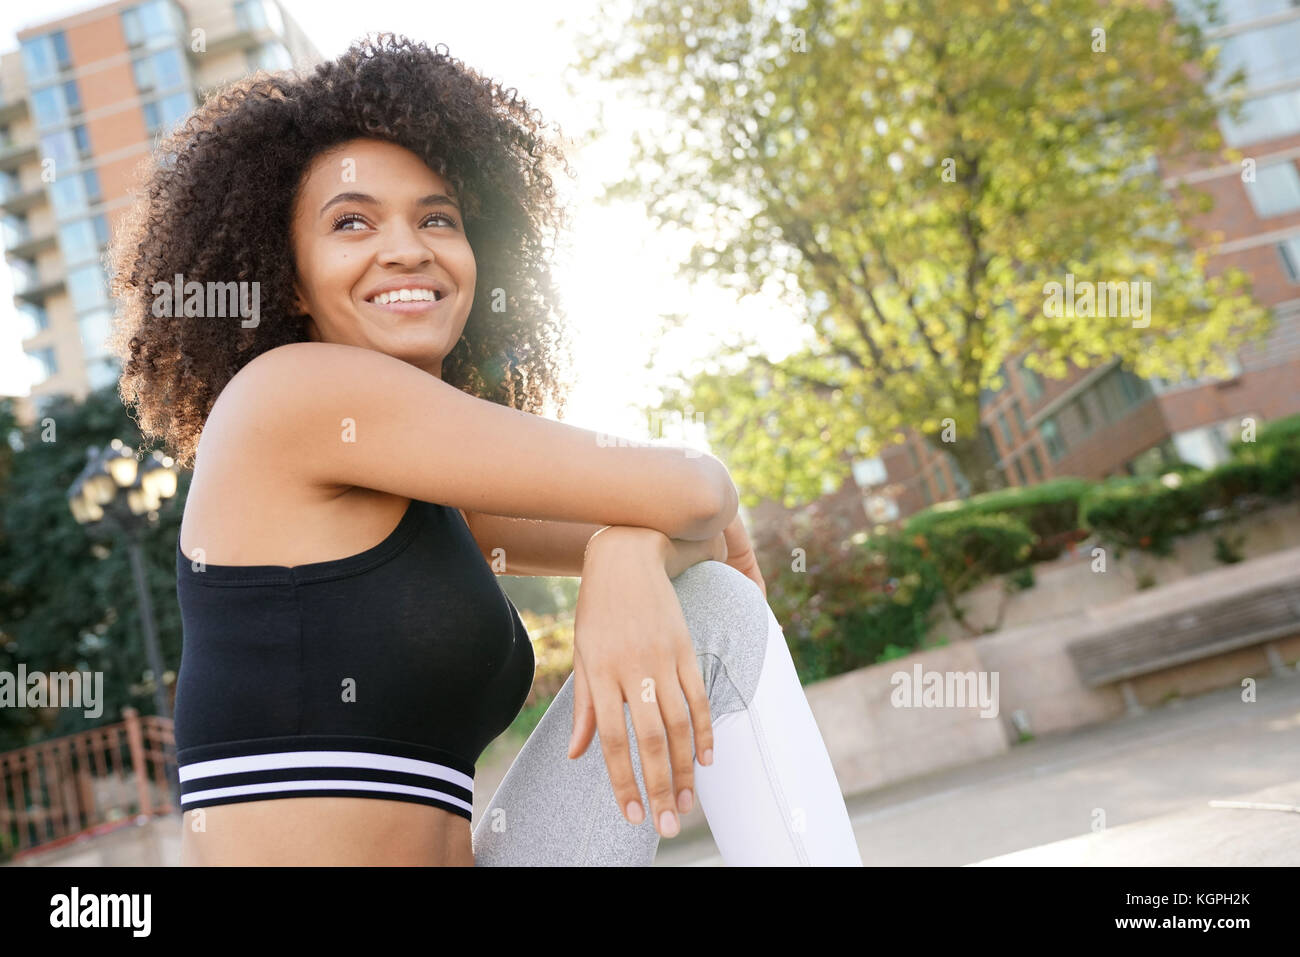 Portrait von Fitness Mädchen im Training Outfit Stockfoto